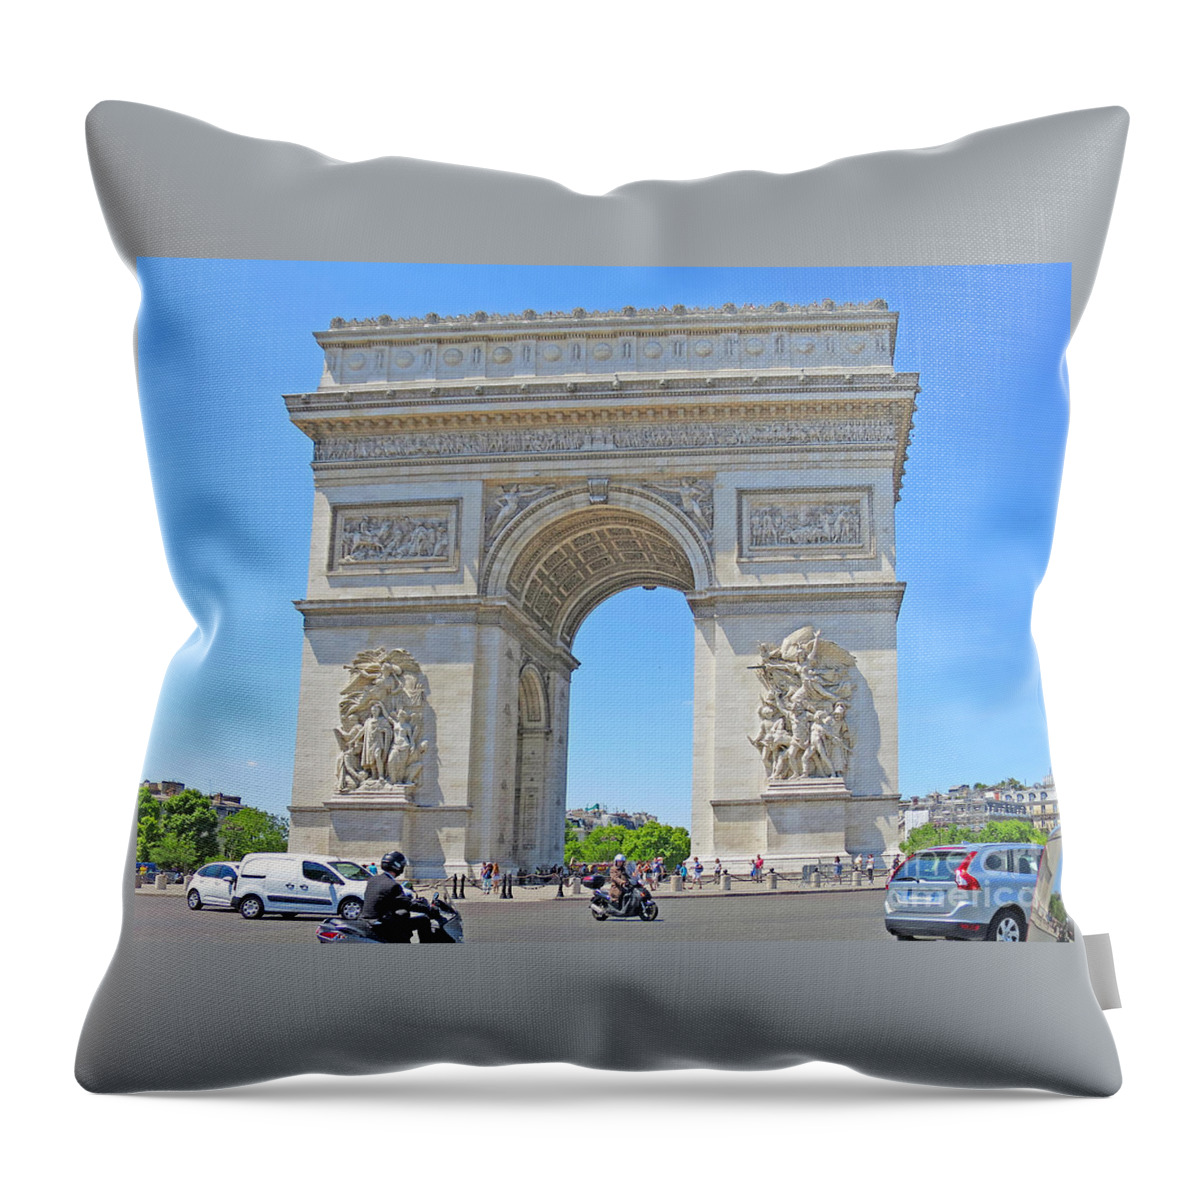 Paris Throw Pillow featuring the photograph Arc de Triomphe by Ann Horn